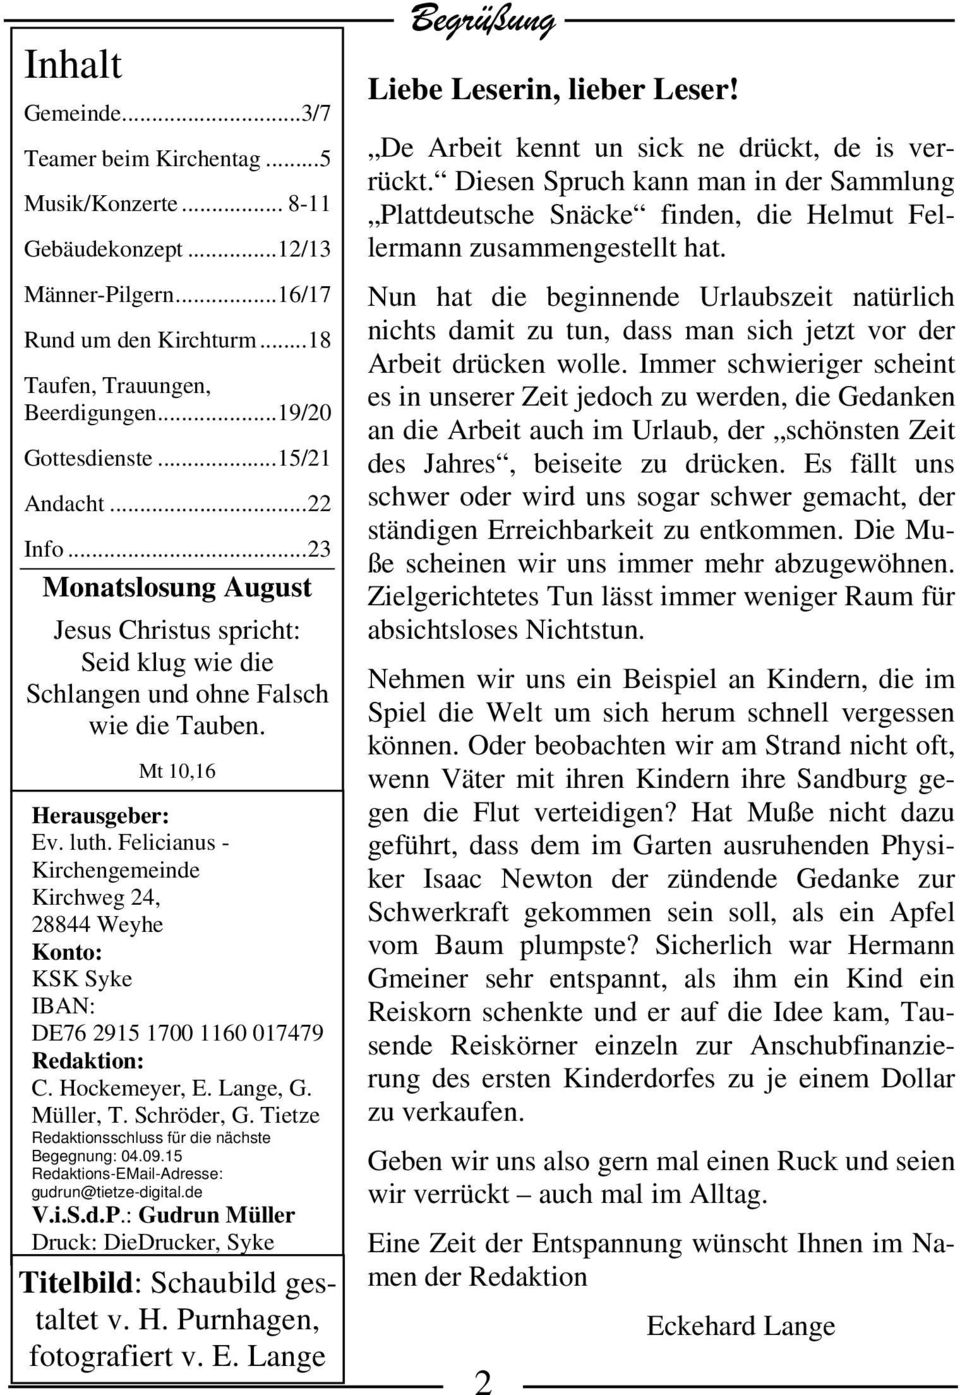 Felicianus - Kirchengemeinde Kirchweg 24, 28844 Weyhe Konto: KSK Syke IBAN: DE76 2915 1700 1160 017479 Redaktion: C. Hockemeyer, E. Lange, G. Müller, T. Schröder, G.